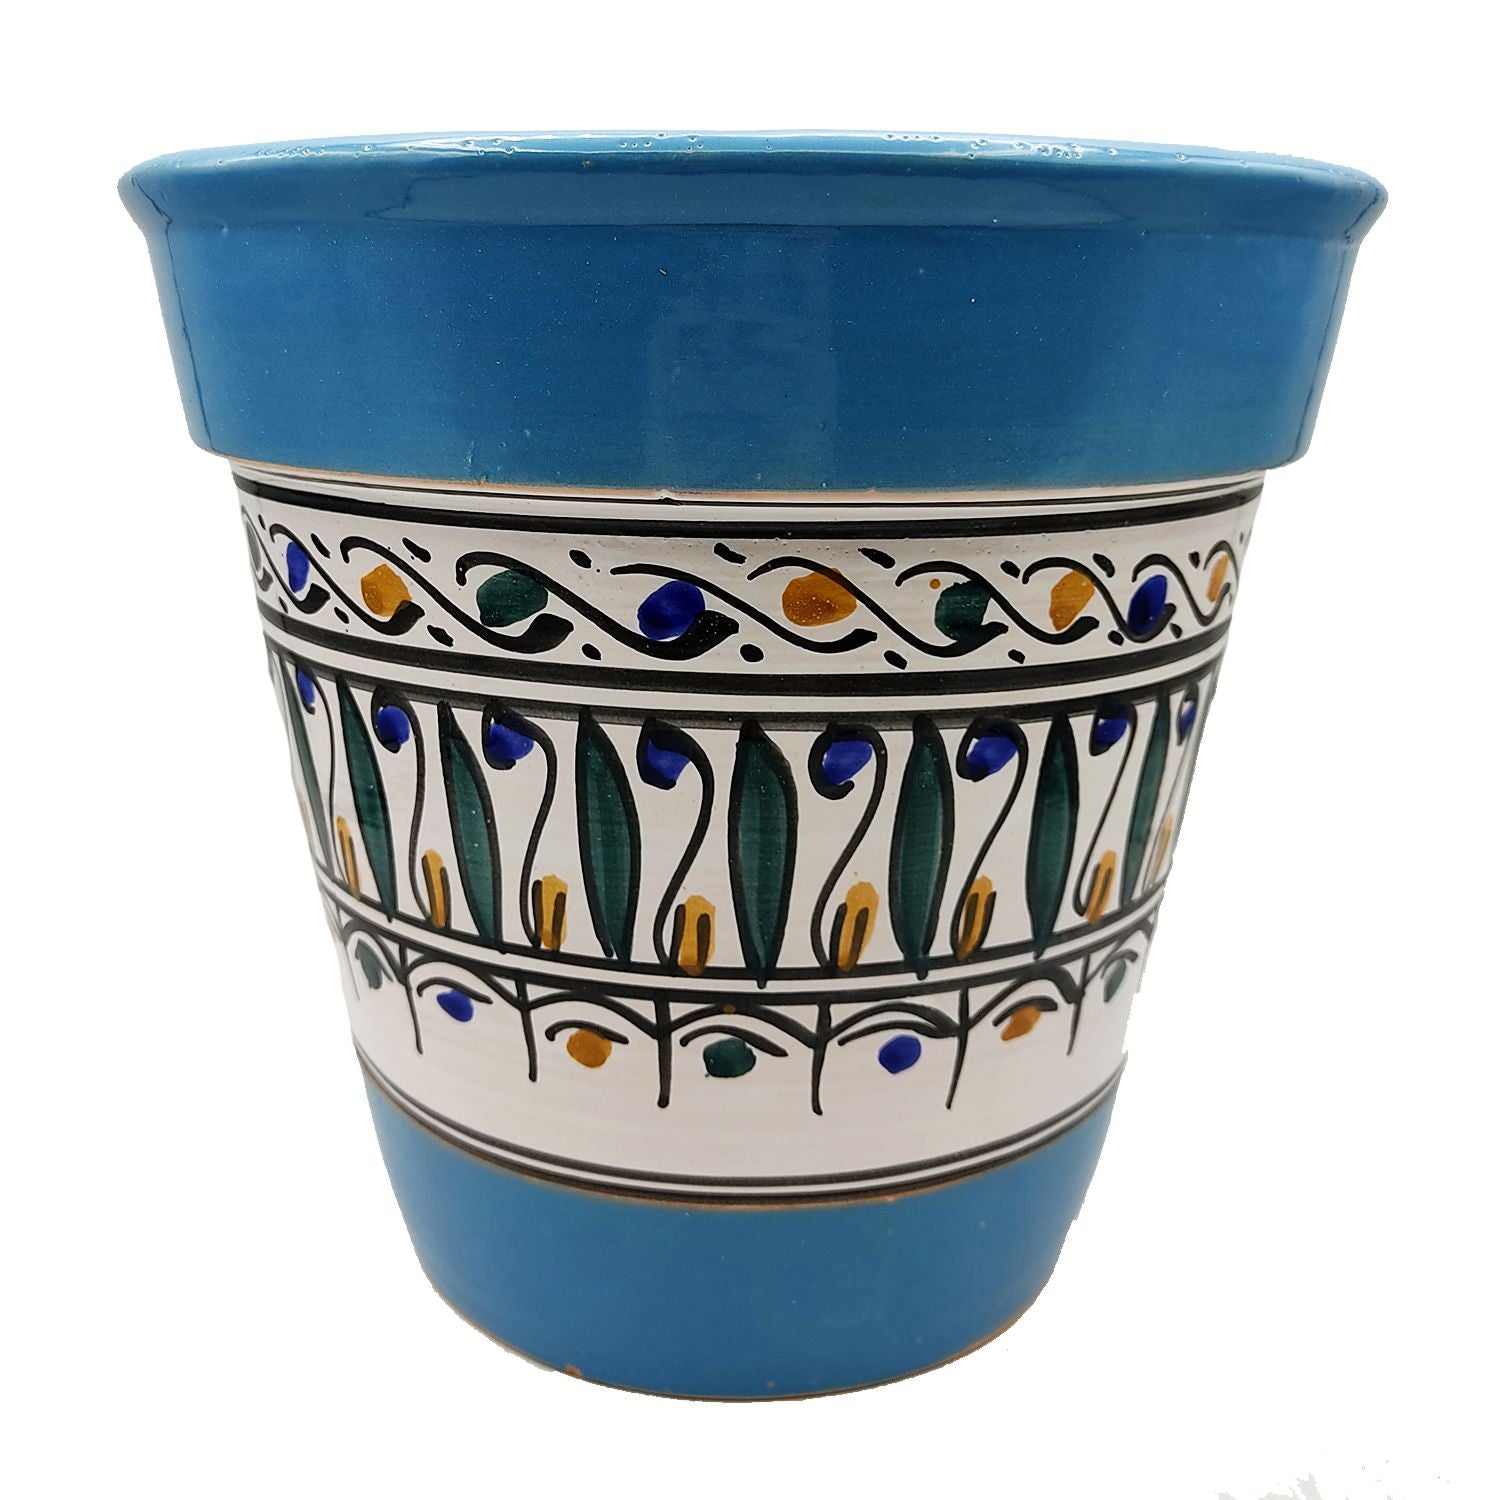 Vaso Terracotta Tunisino Marocchino Etnico Decoro Fioriera Ceramica 0411221029